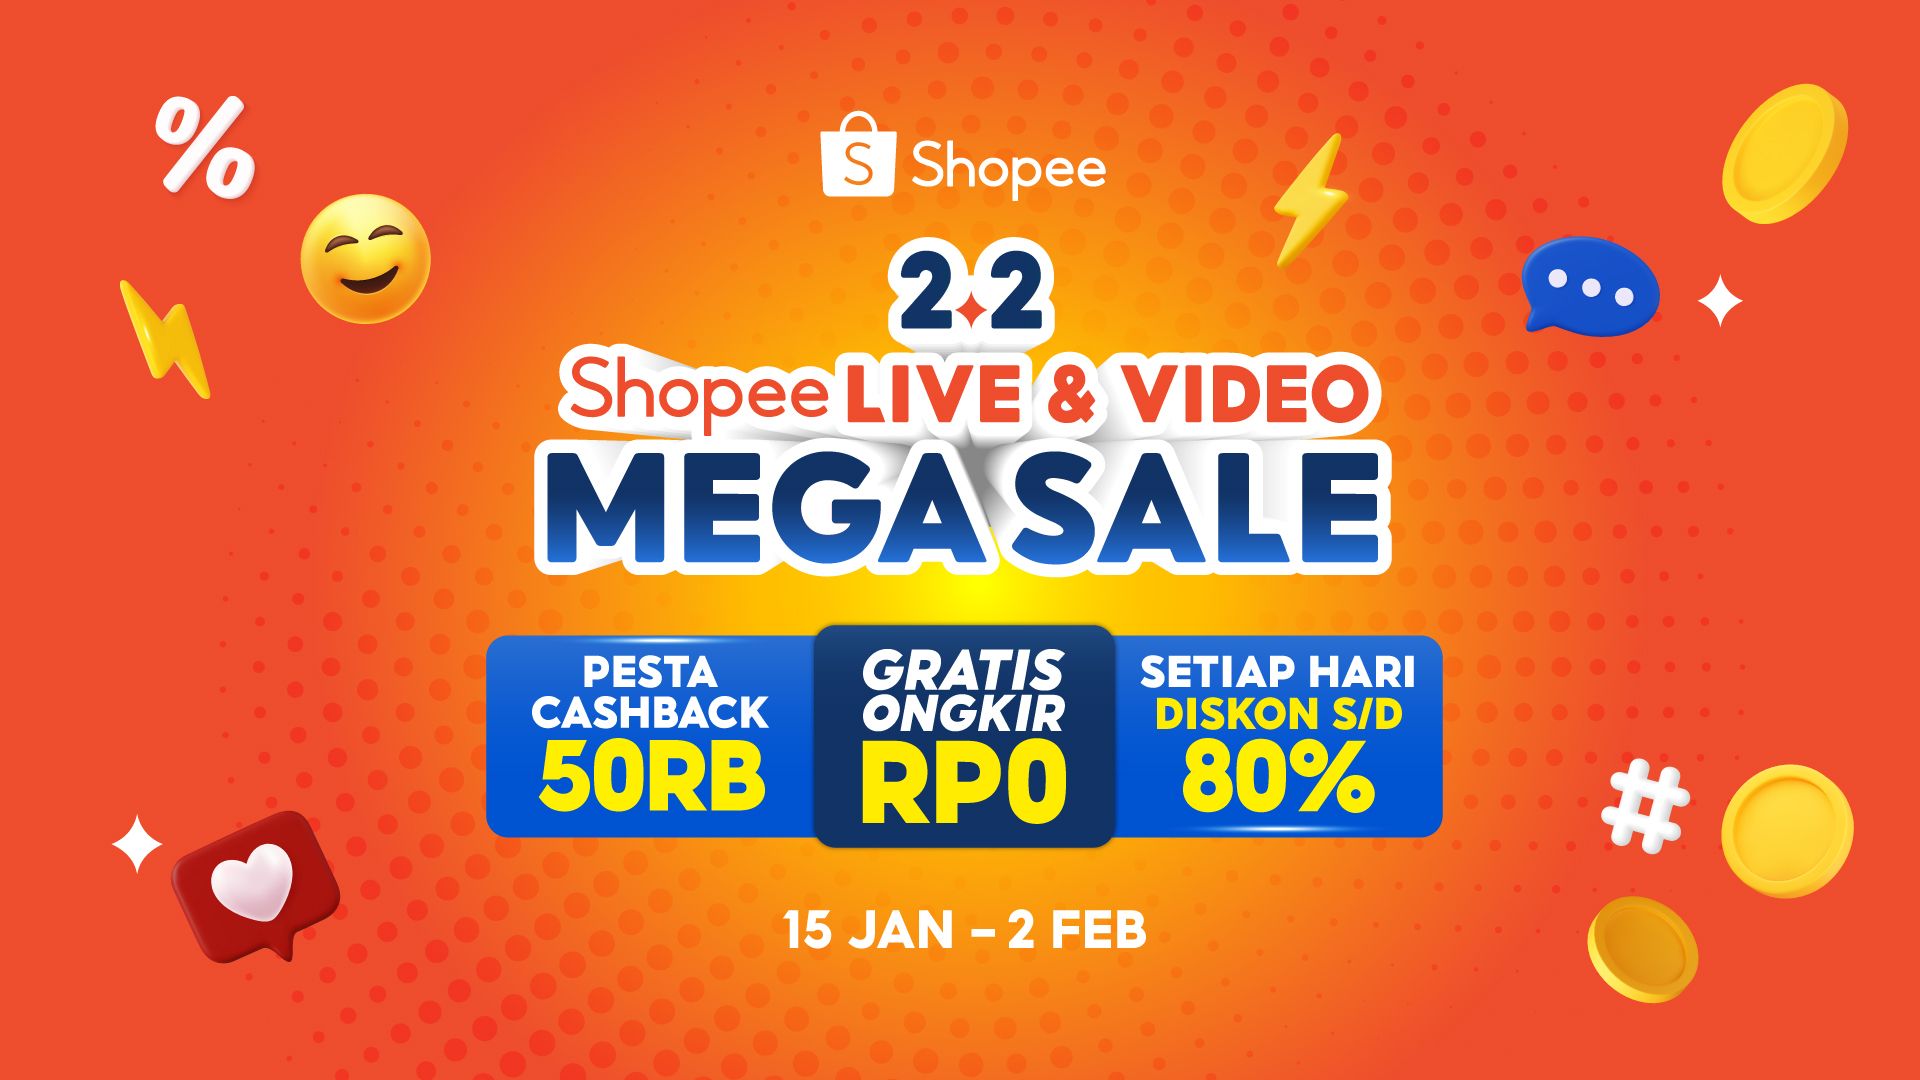 Promo Mega Sale 2.2 Shopee 